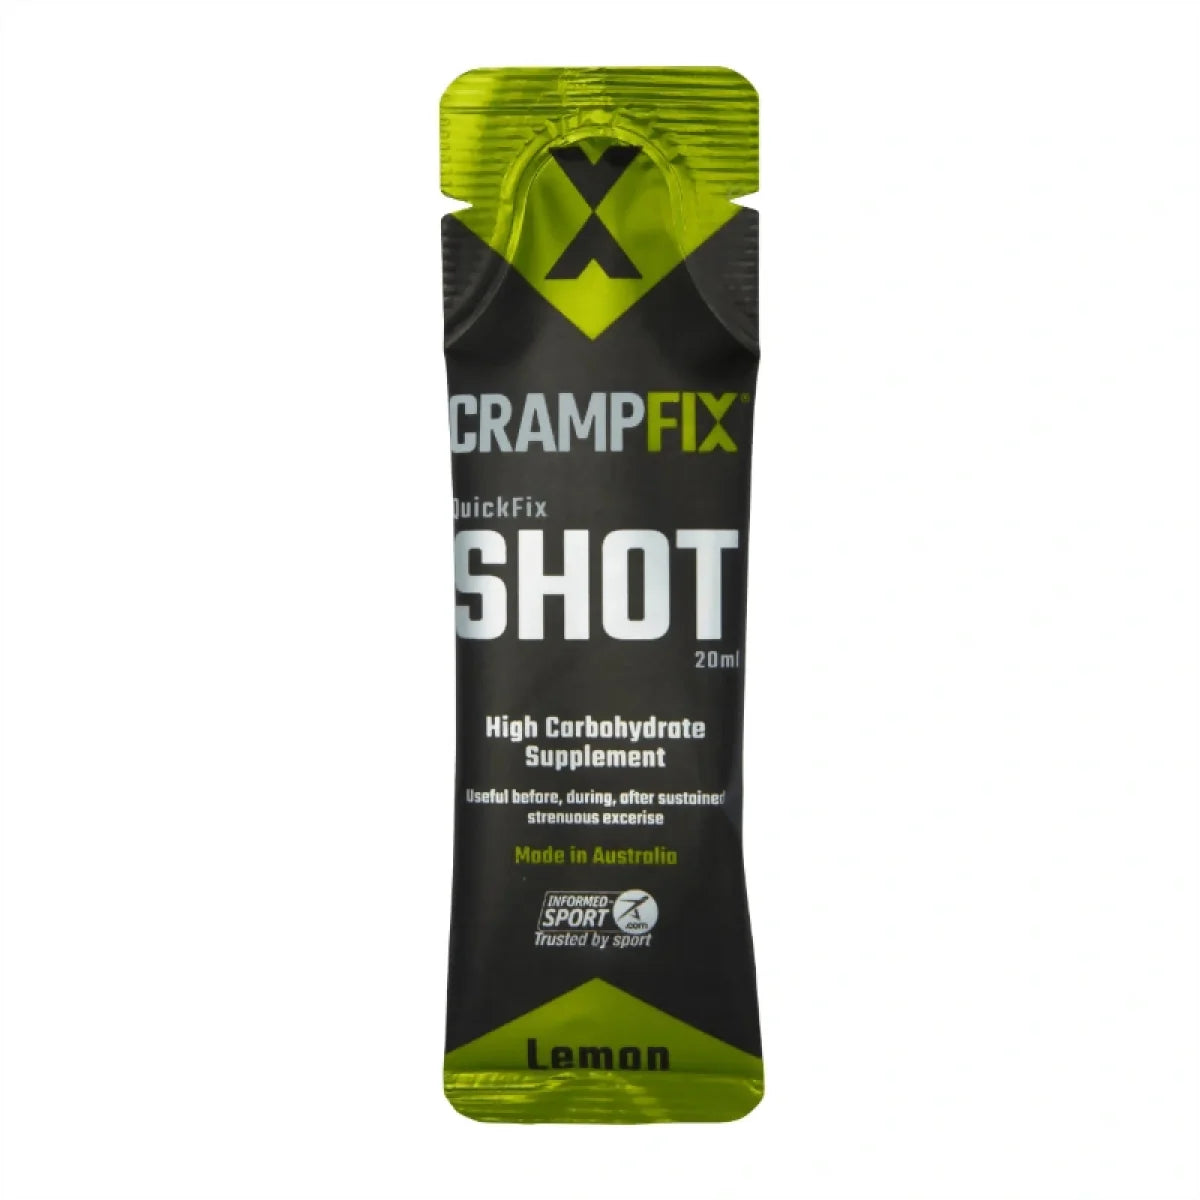 CrampFix QuickFix Shot High Carbohydrate Supplement